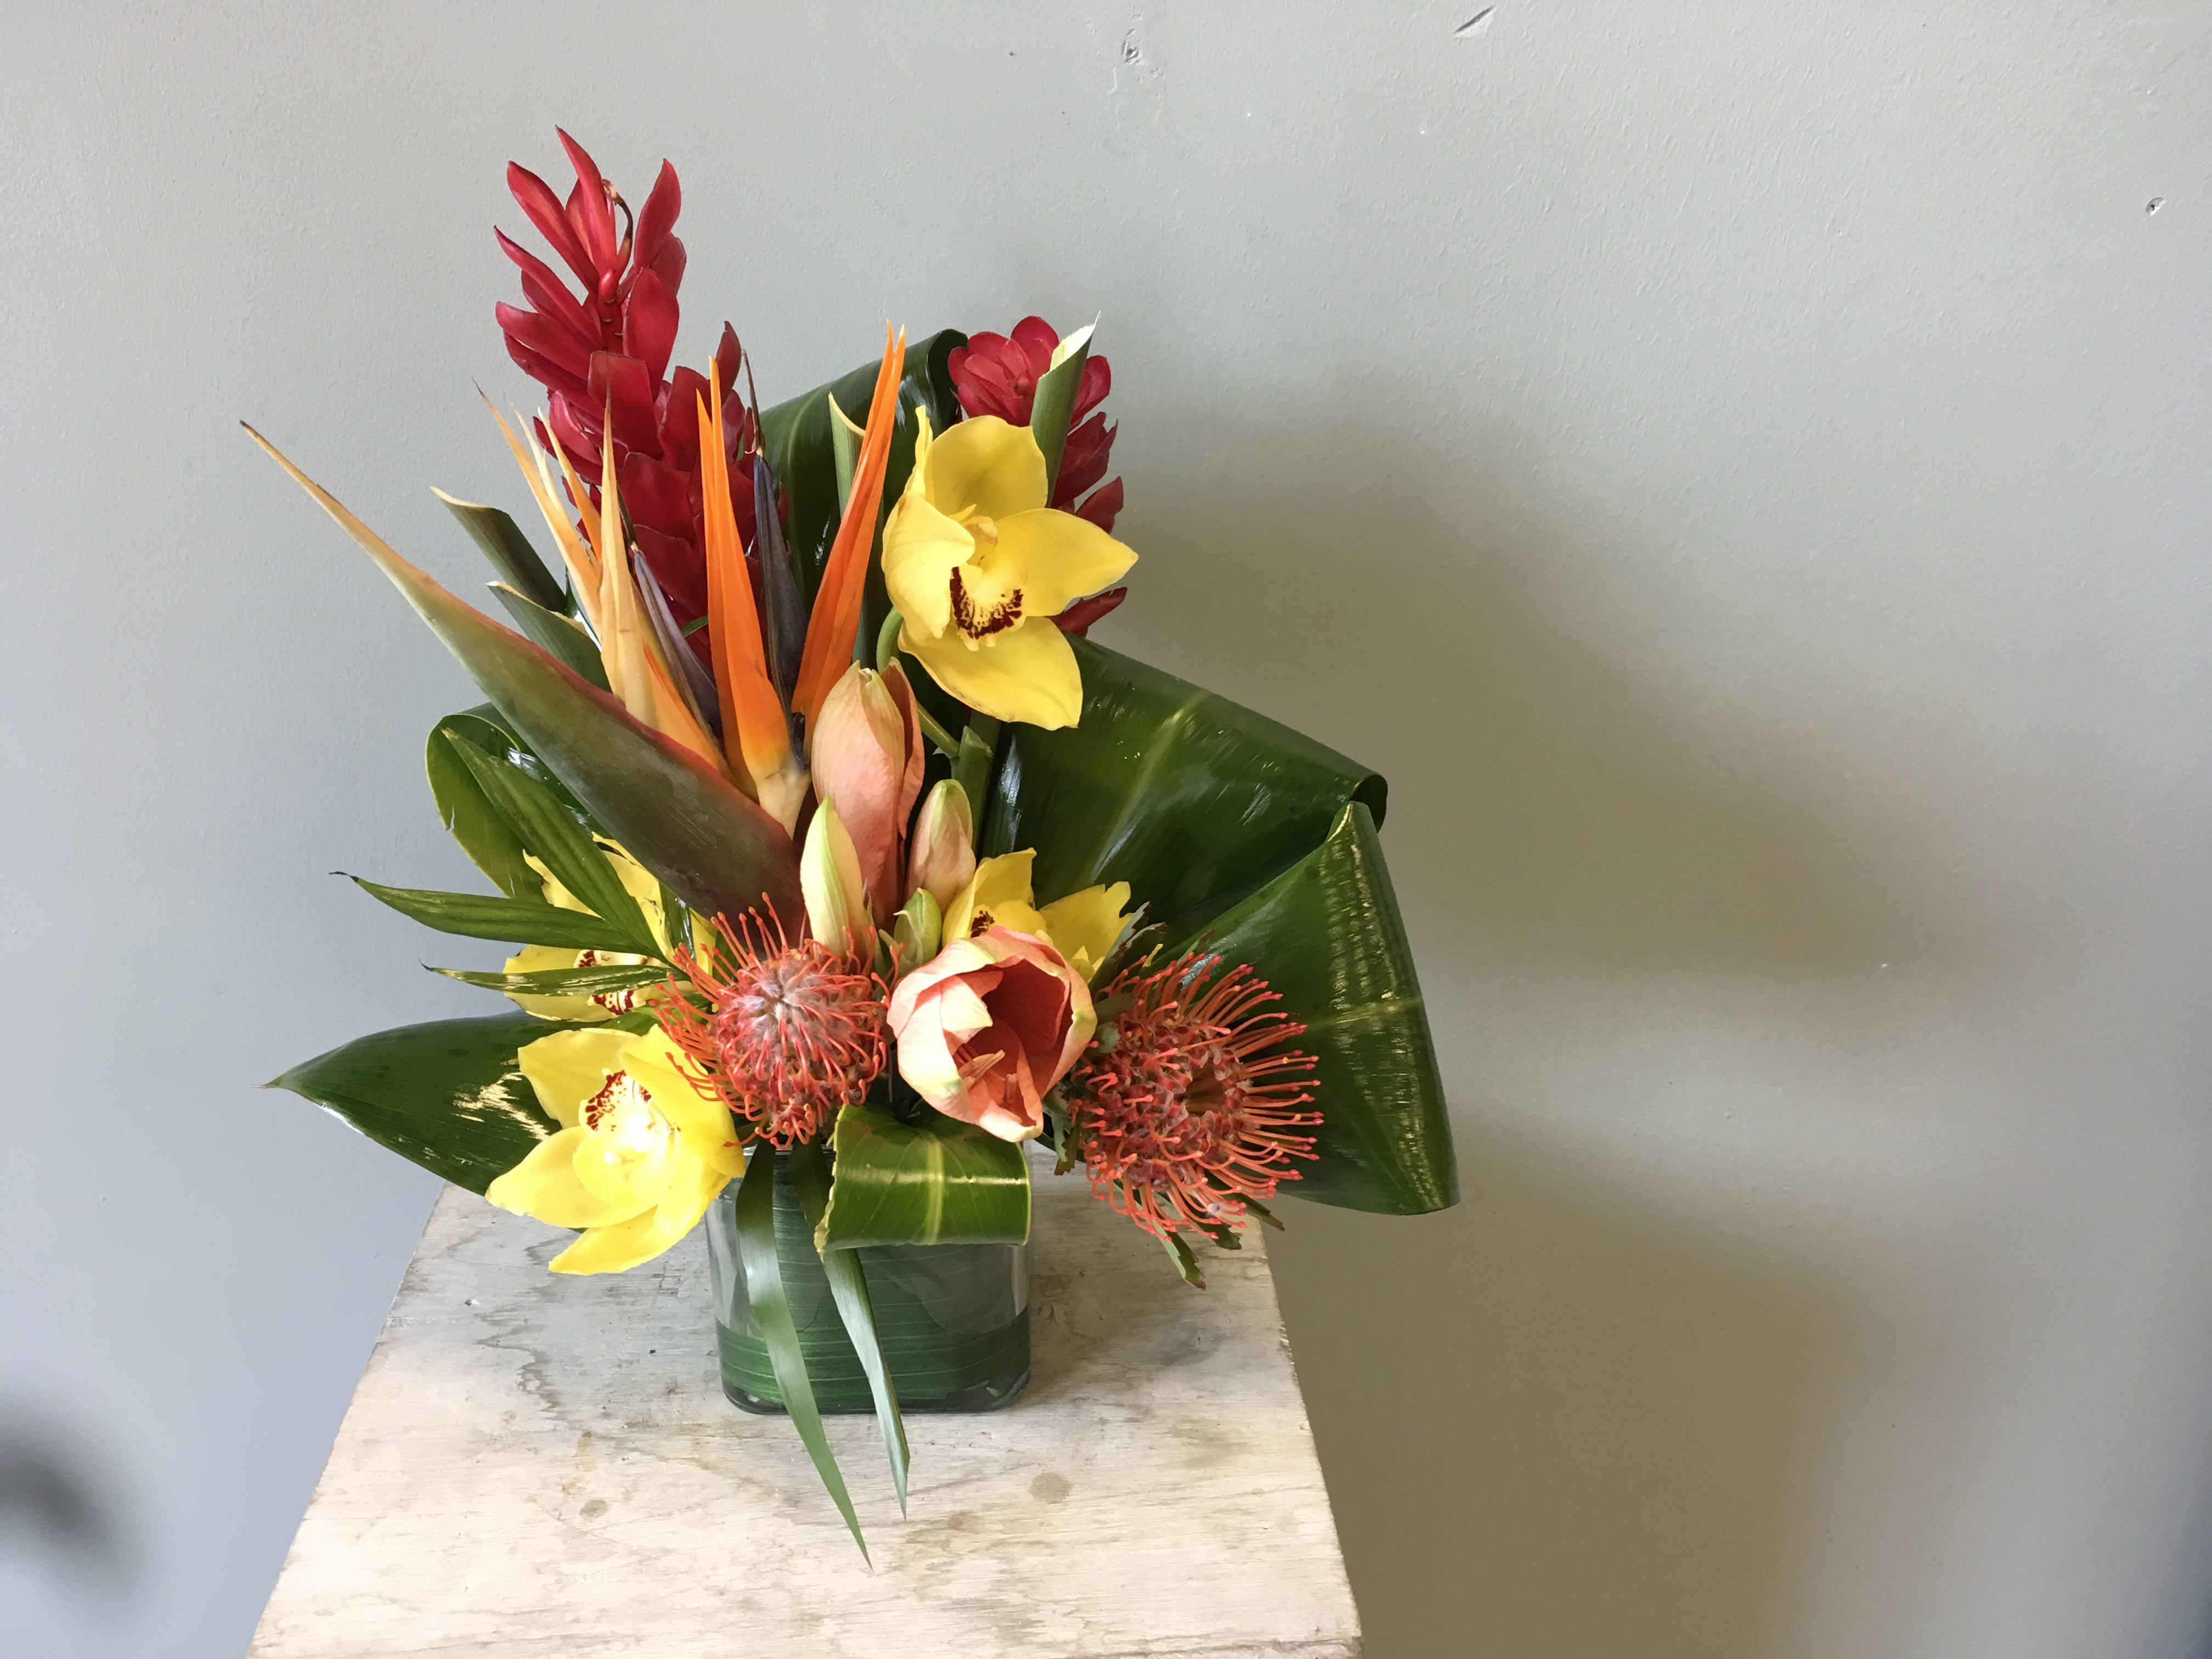 Tropical Paradise - Cymbidium Ginger Protea Ti Leaf and more